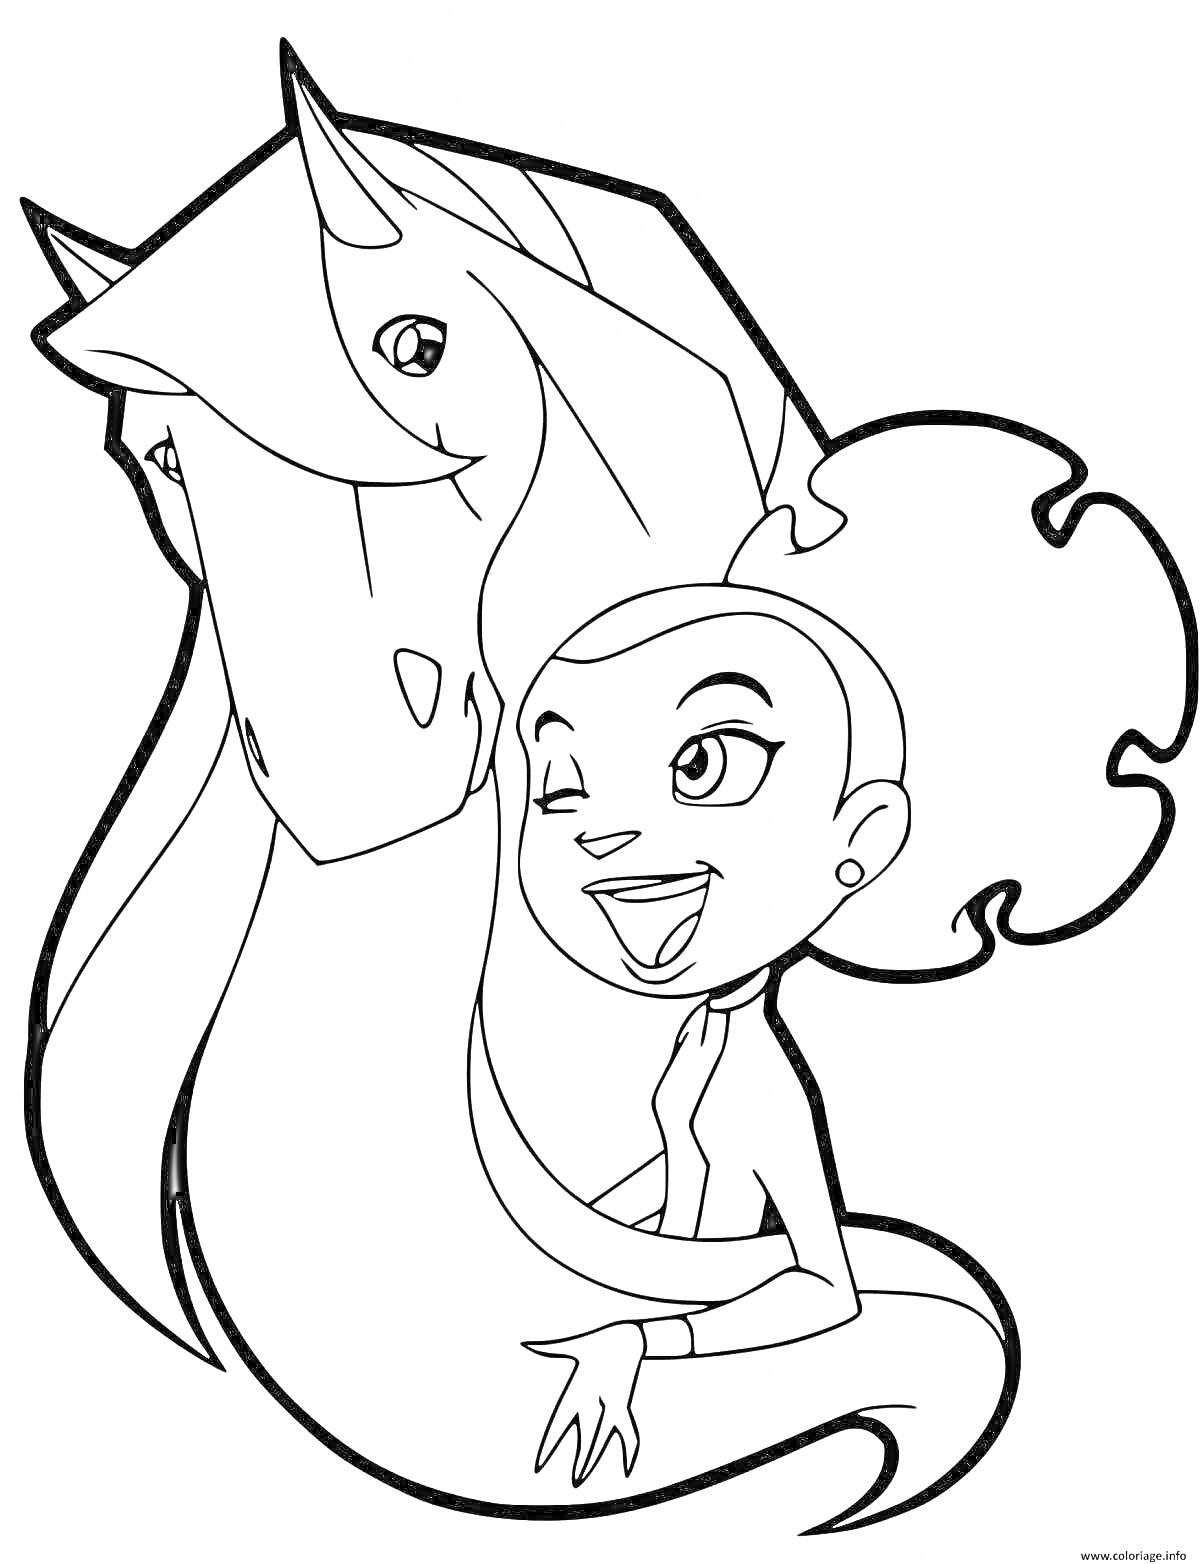 Раскраска Девочка с лошадью (девочка с фигурной прической стоит рядом с лошадью, улыбается)